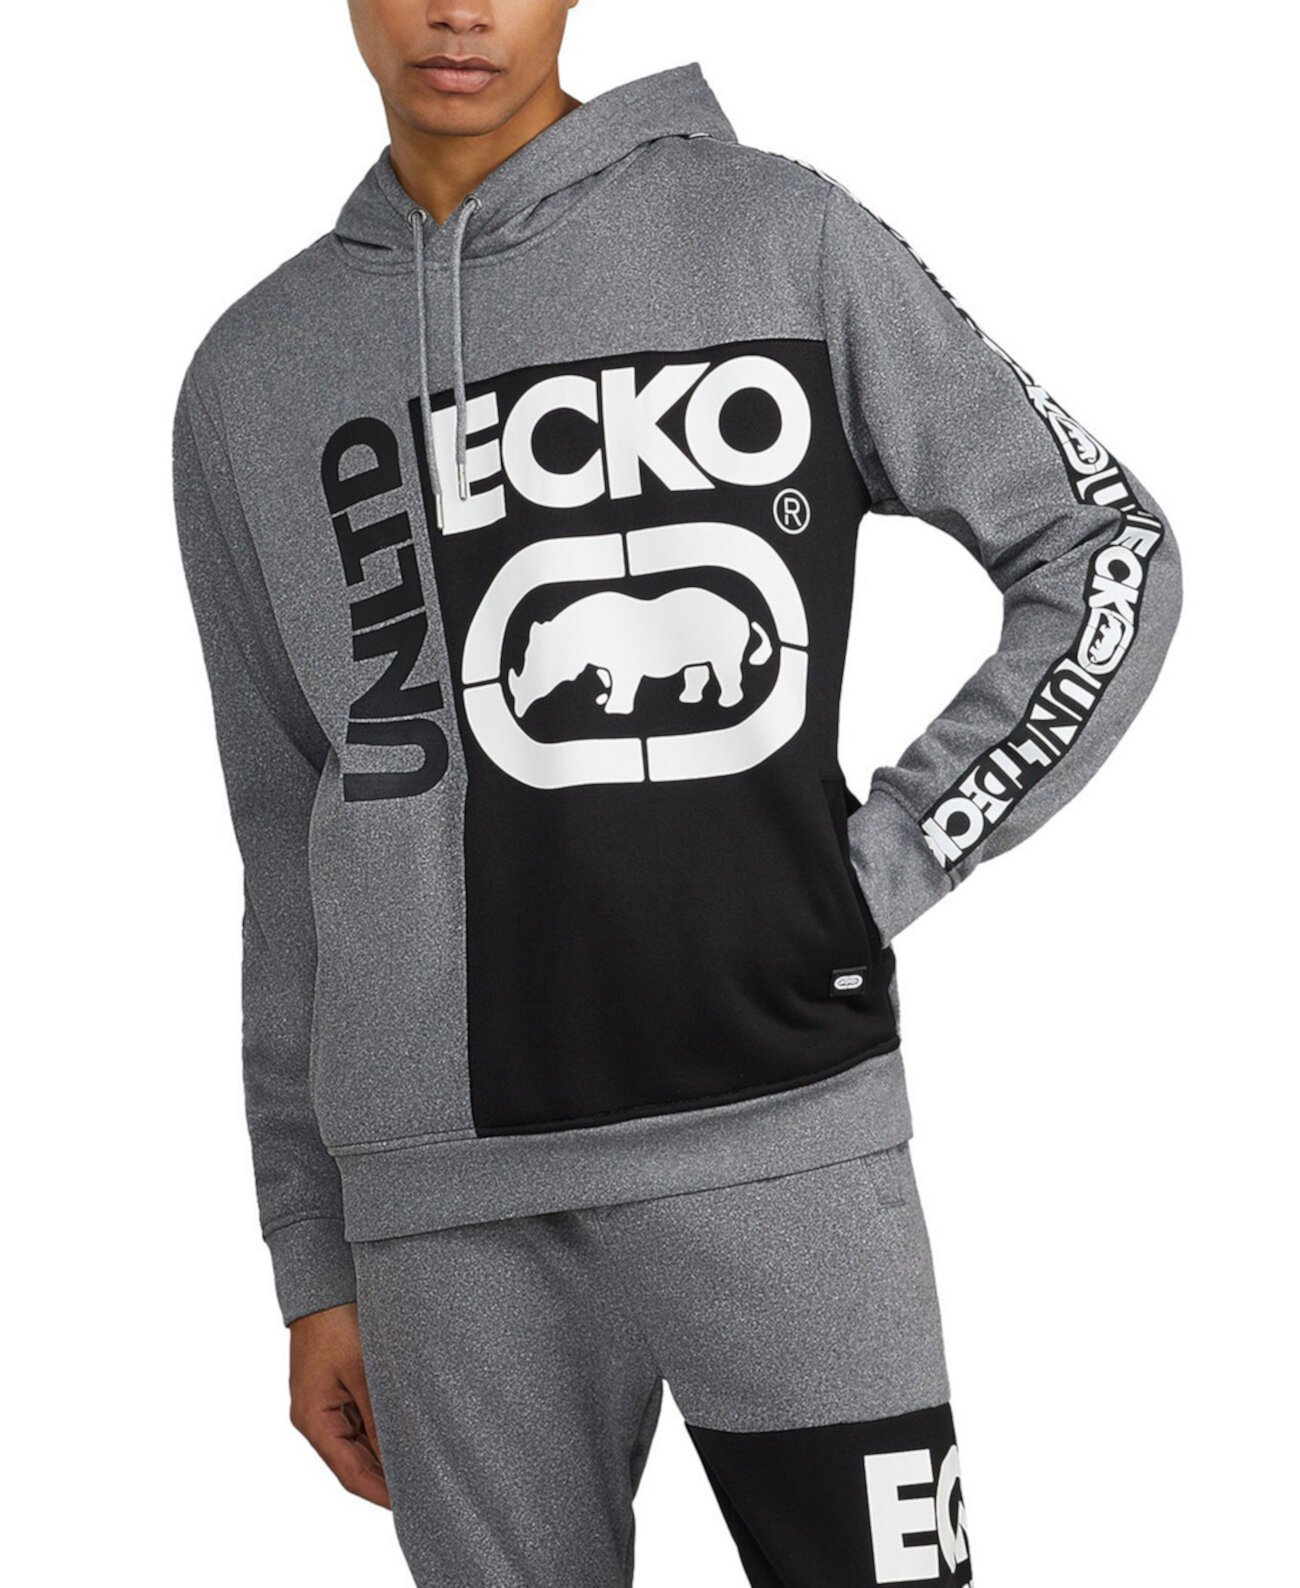 Мужской пуловер с капюшоном под углом 90 градусов Ecko Unltd